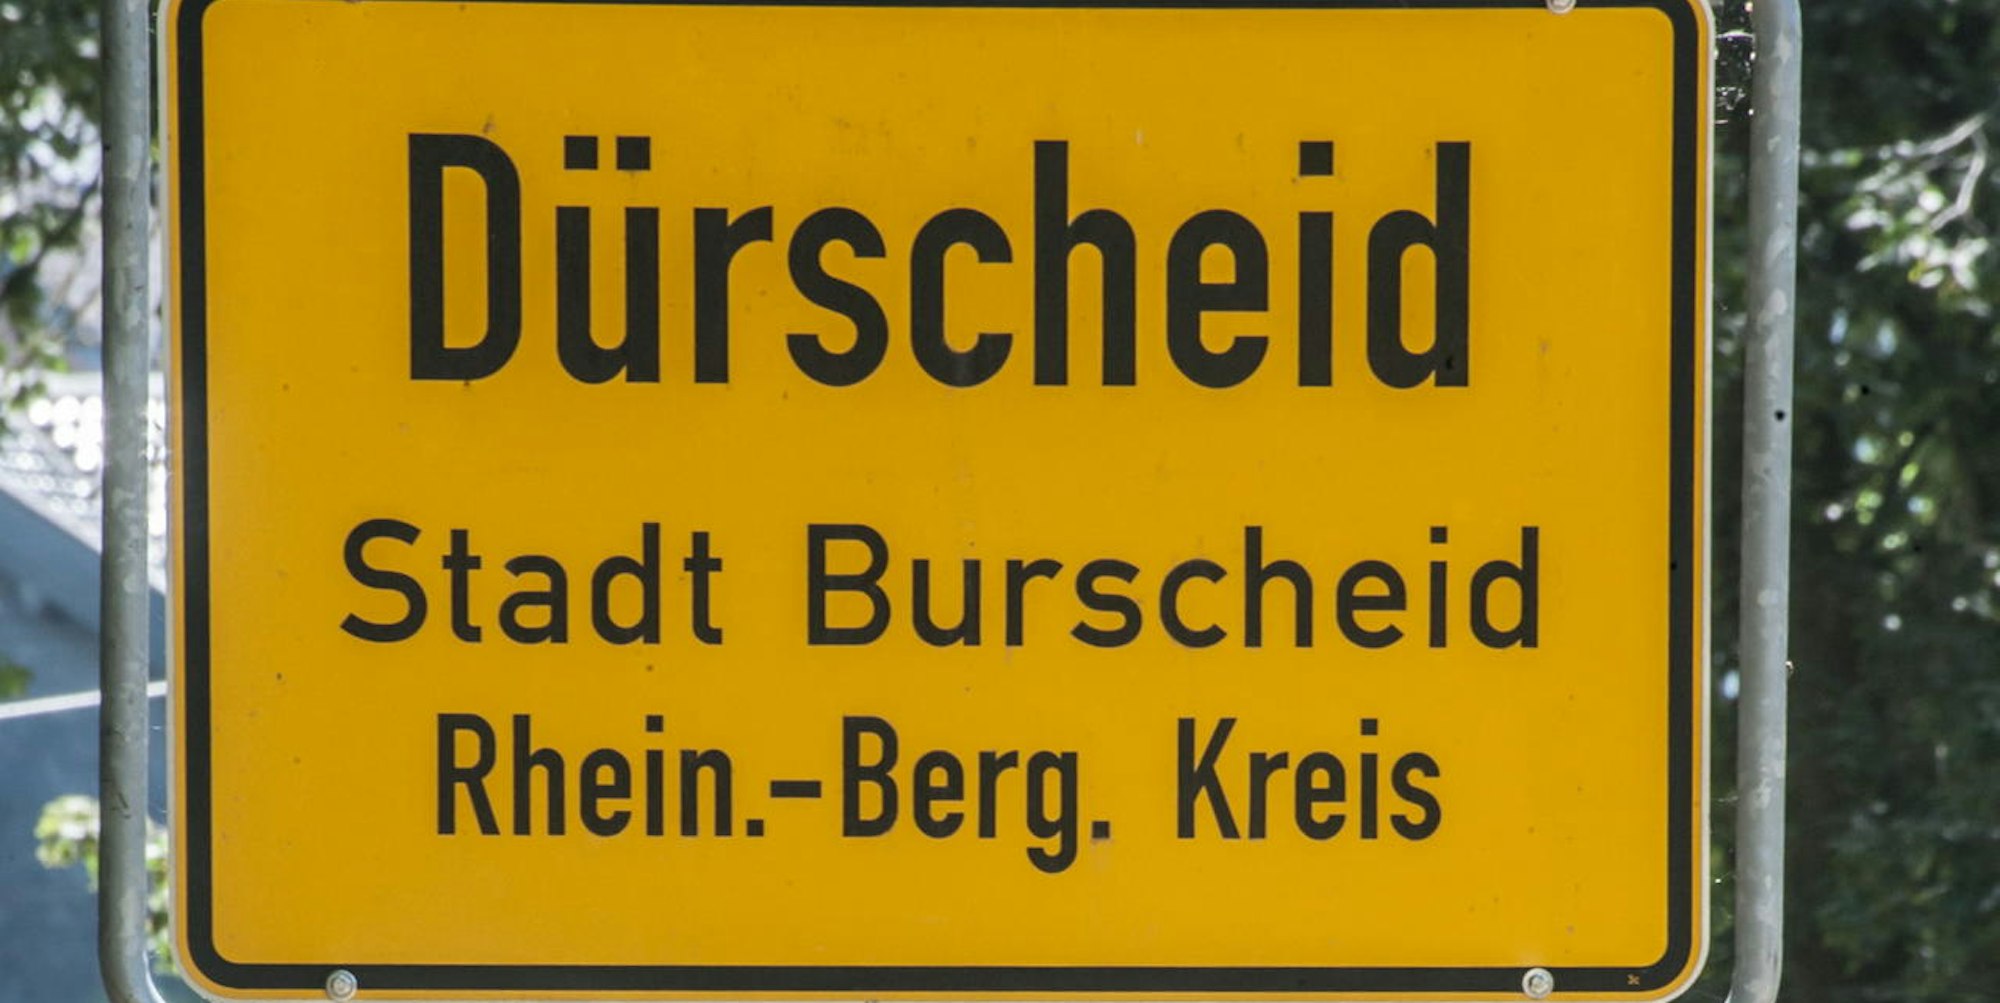 burscheid-duerscheid-ALF_0901